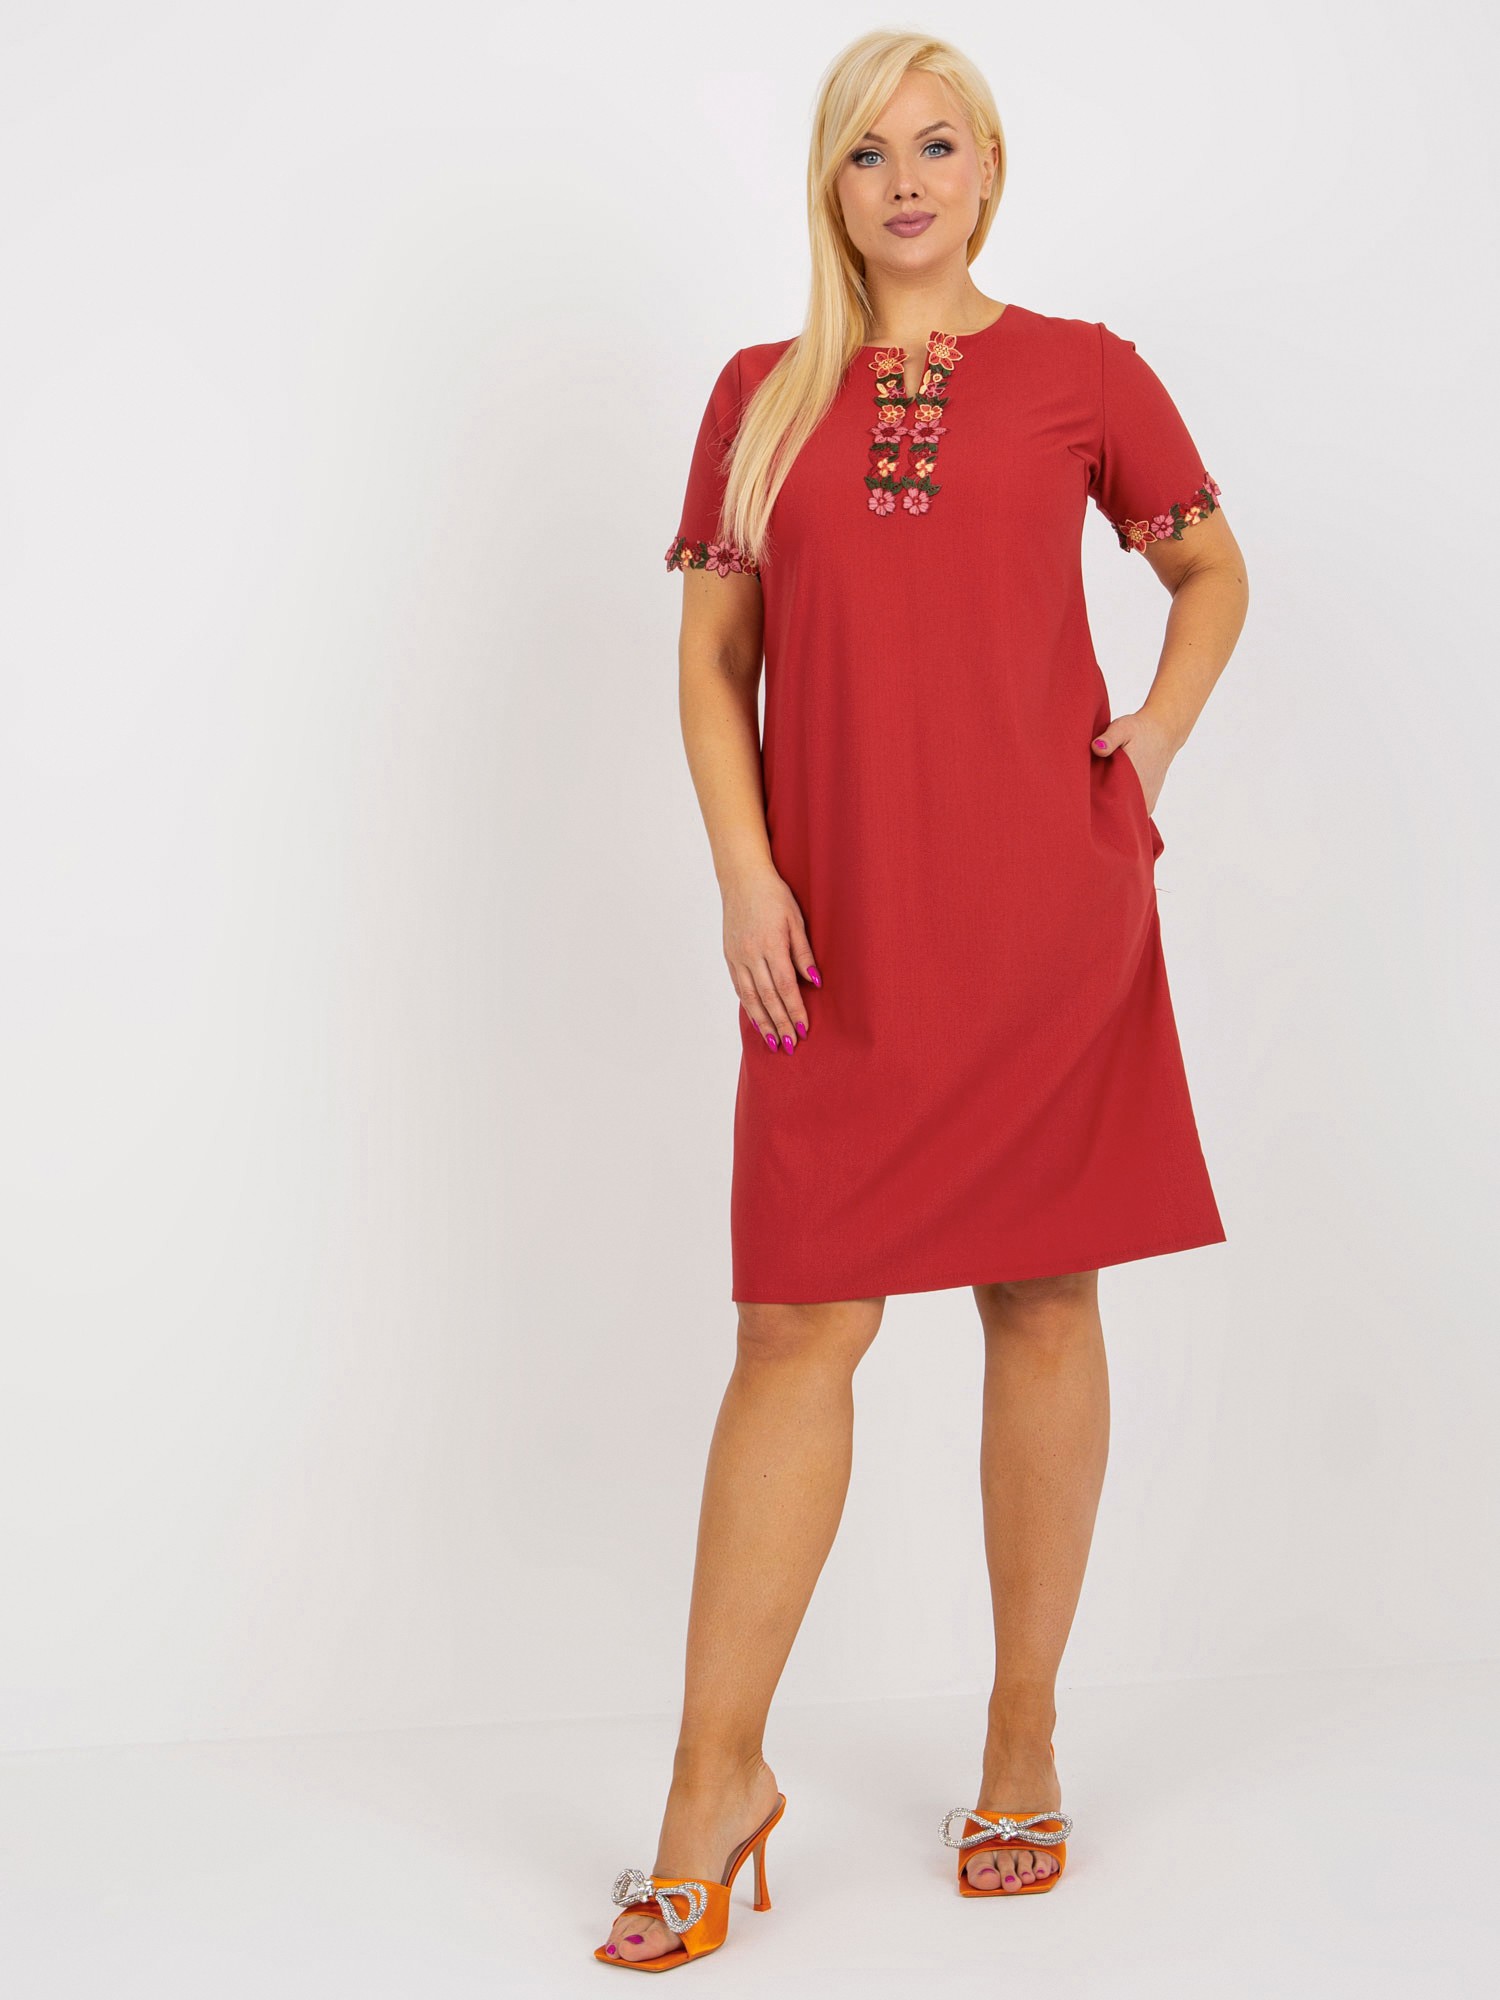 Tmavočervené šaty s kvetinovou čipkou LK-SK-506309.50-red Veľkosť: 44